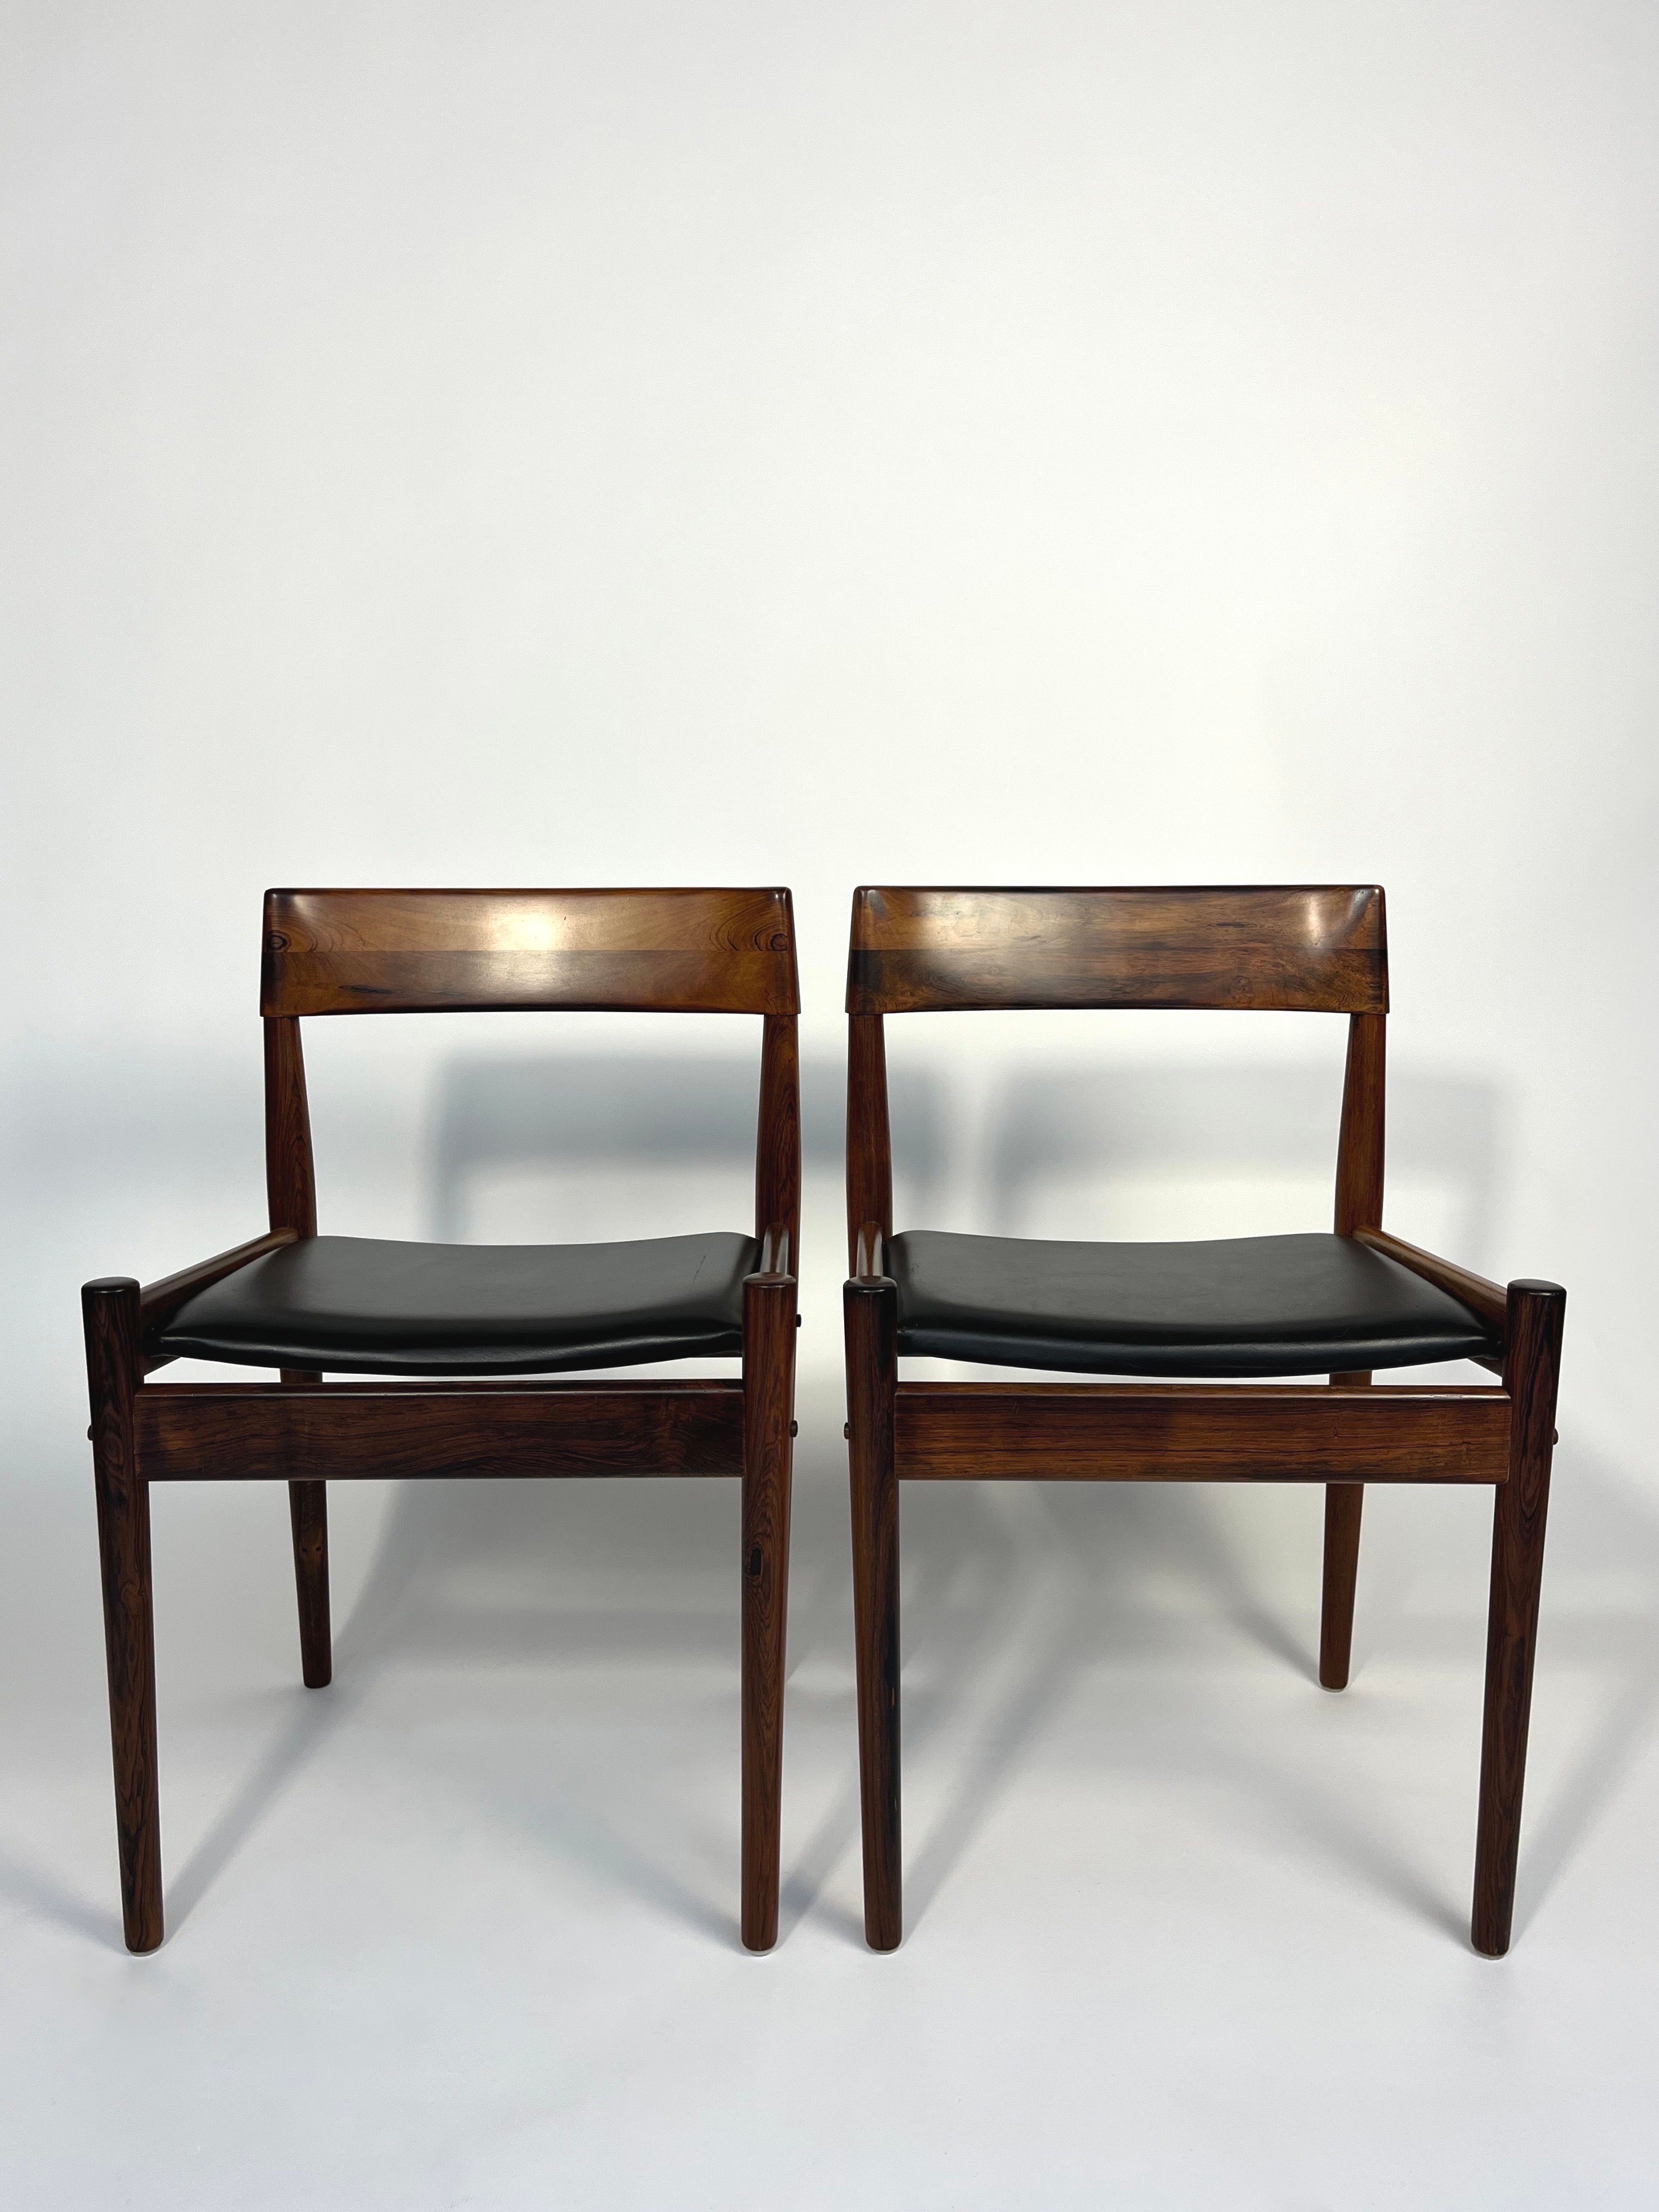 Ensemble de deux magnifiques chaises de salle à manger conçues par Grete Jalk pour P. Jeppesen. Modèle n° PJ4-2, fabriqué au Danemark au début des années 1960.

Cadre en palissandre massif au grain magnifique, laqué. Rembourré en cuir noir.

